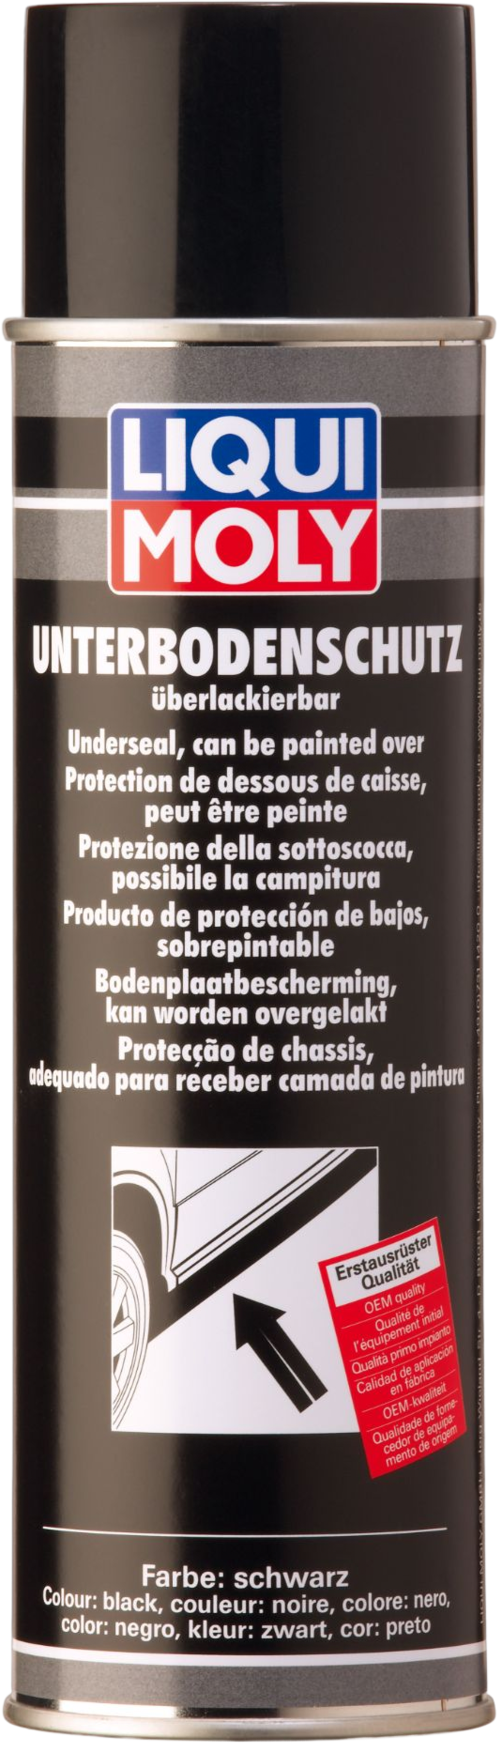 Liqui Moly Bodemplaatbescherming zwart (Spray), 500 ml